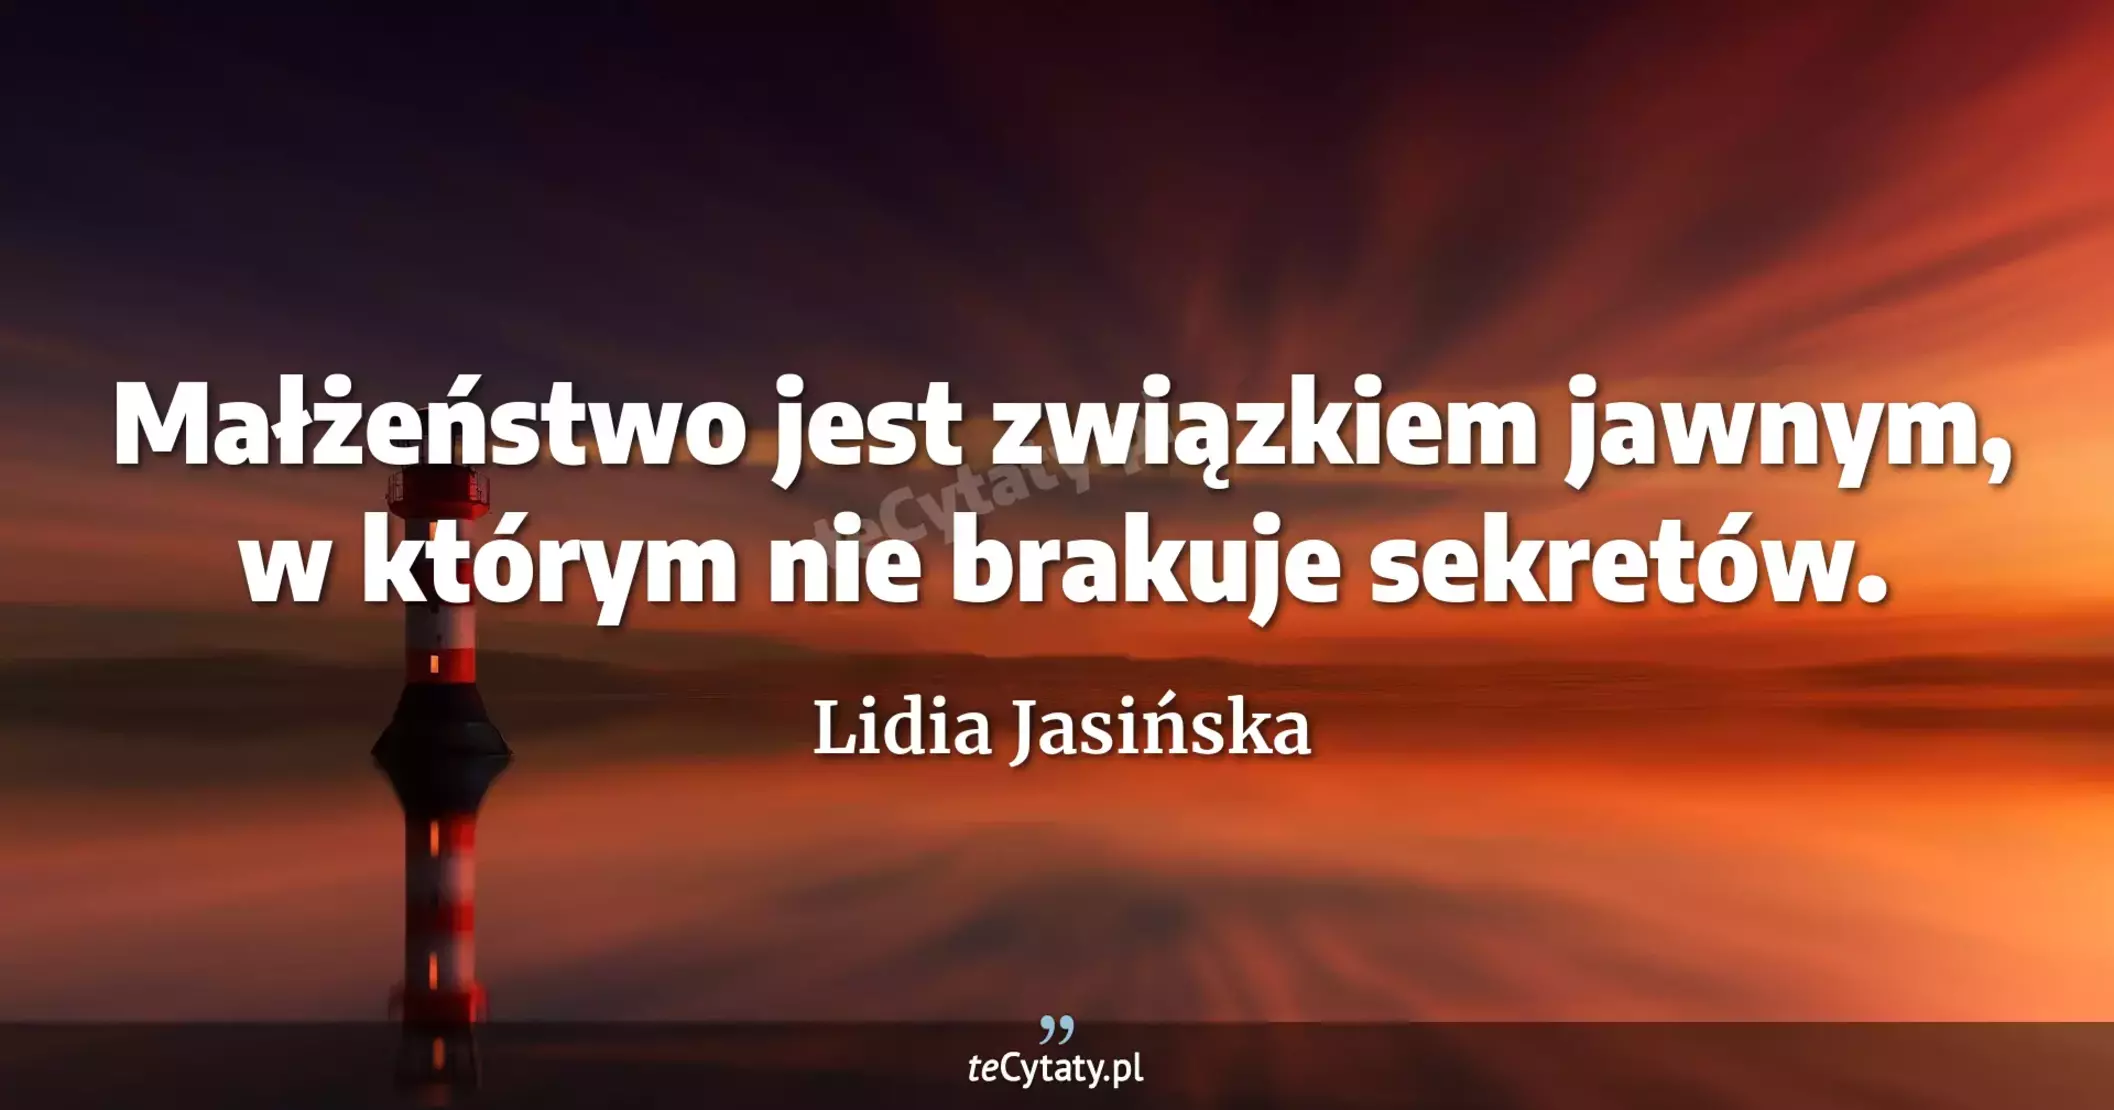 Małżeństwo jest związkiem jawnym, w którym nie brakuje sekretów. - Lidia Jasińska